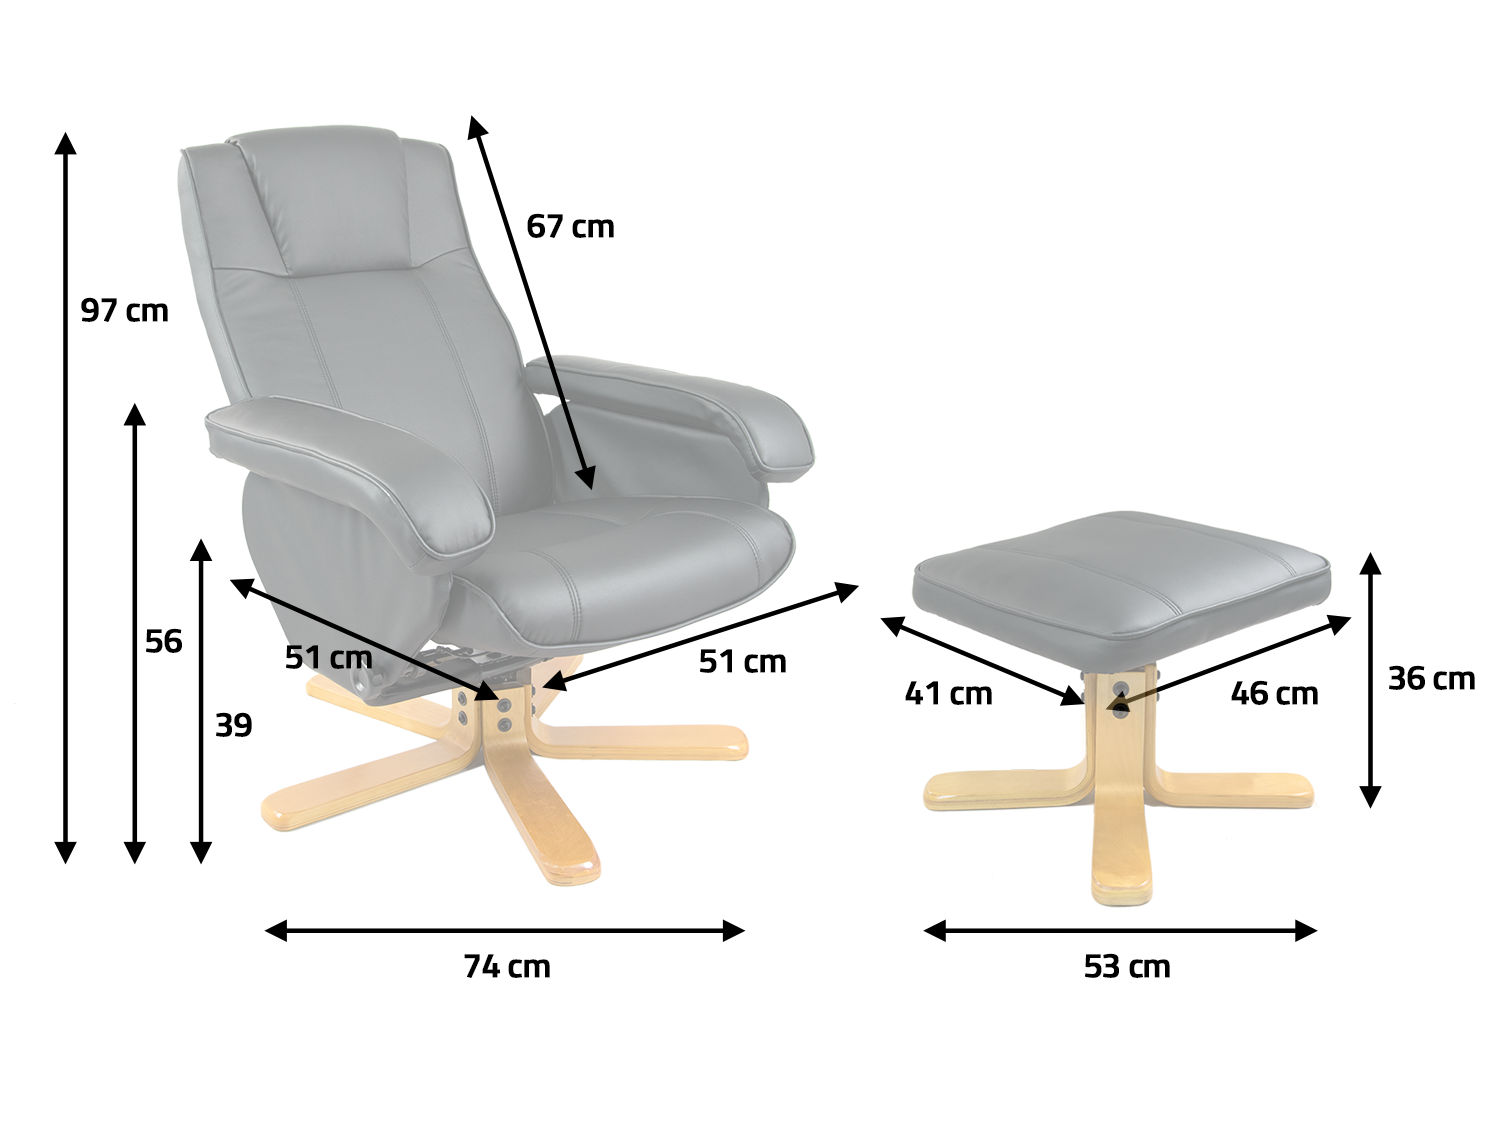 Подобрать сиденье по размерам. Кресло 201.167.59 17154. Кресло пациента «Сайма» с подставкой для ног. Пульт управления массажного кресла eg8805. Компактное кресло с подставкой для ног.